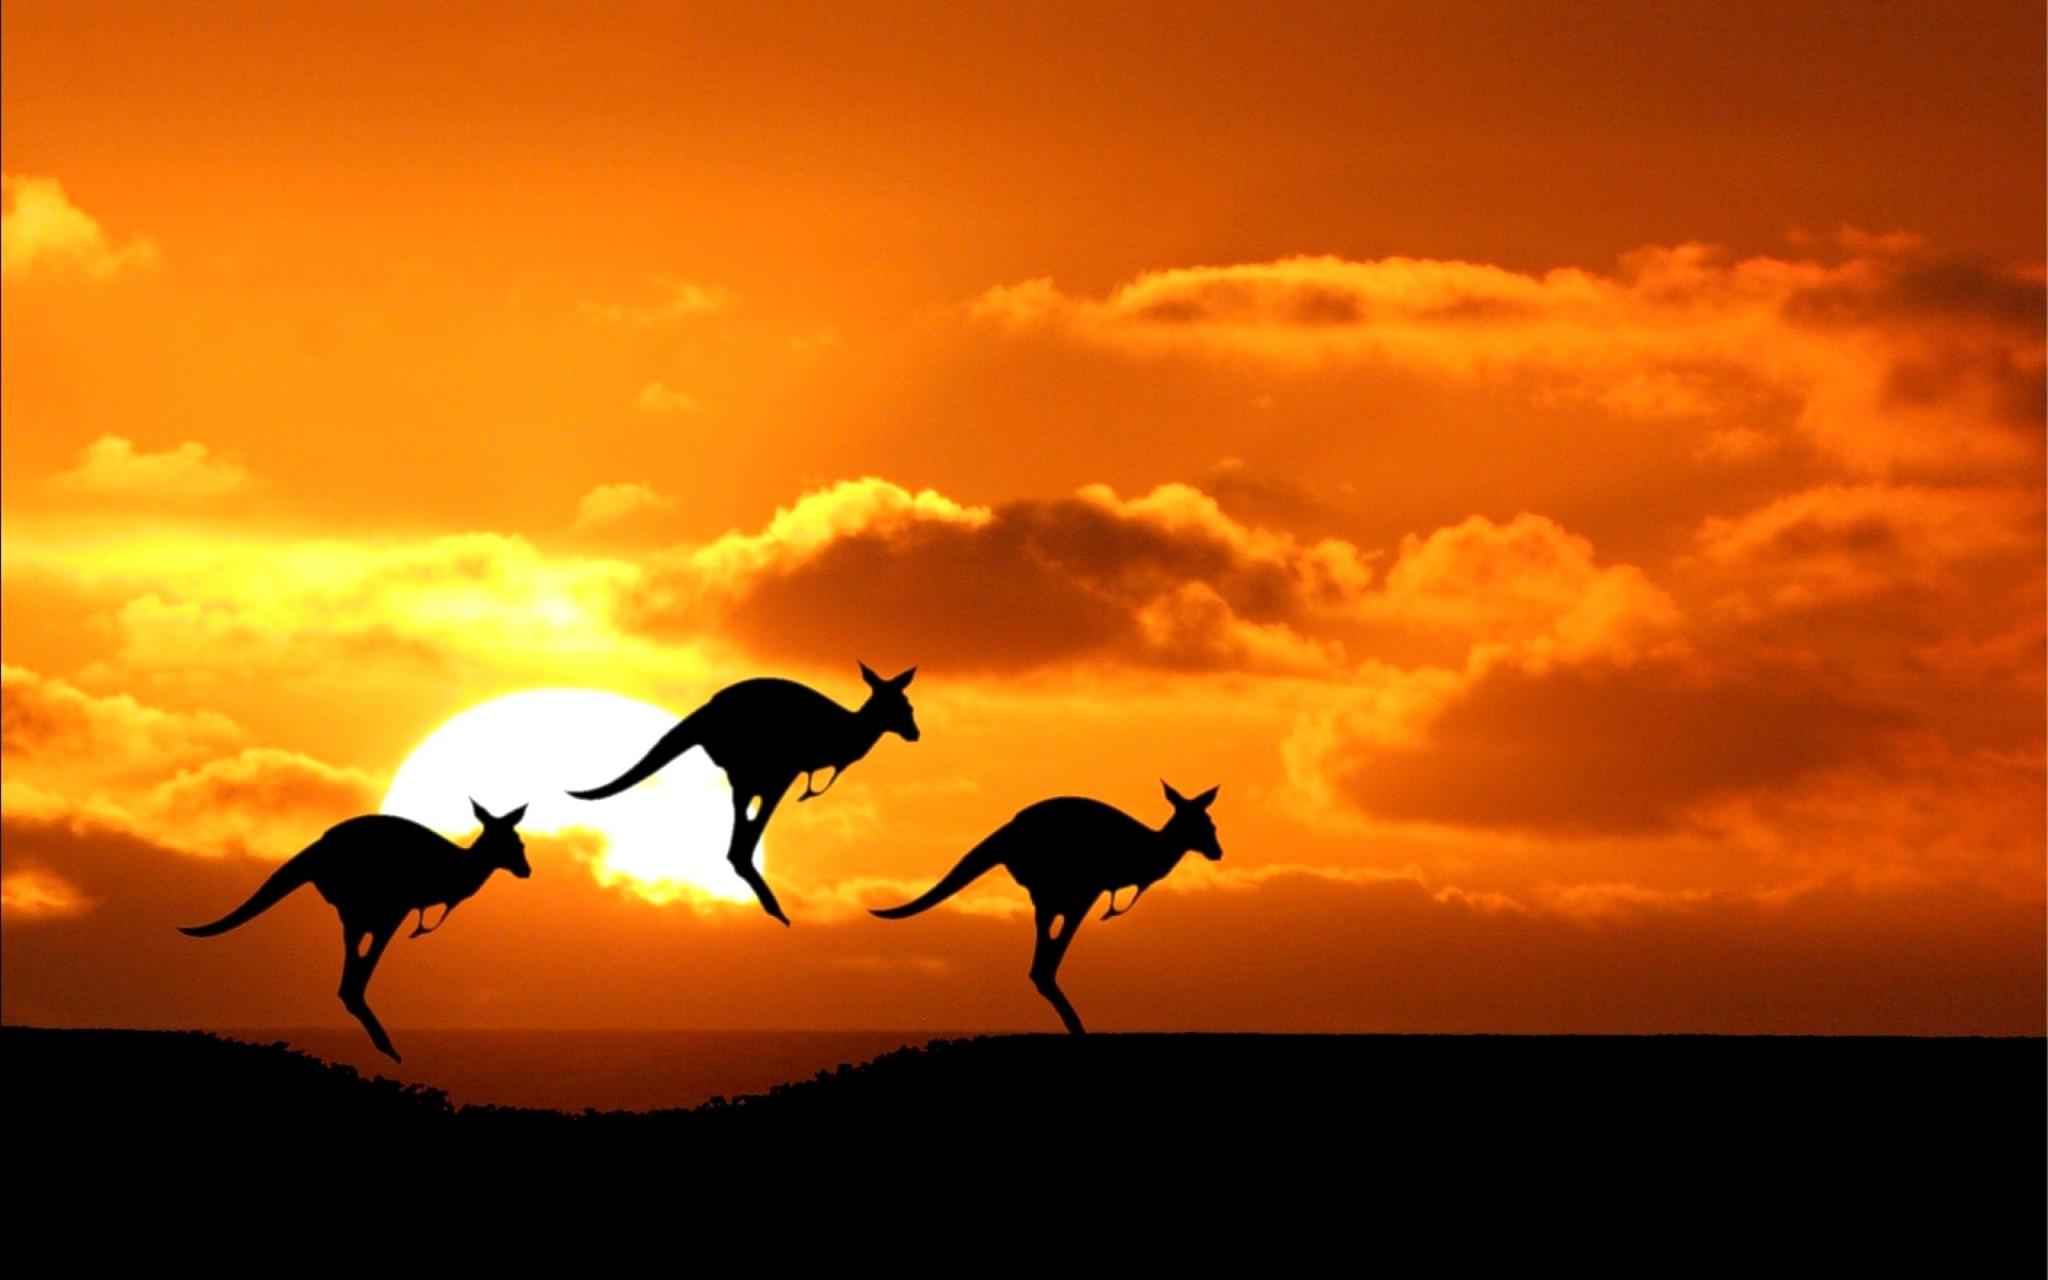  Mitwagenrundreise im Süden Australiens - Känguru